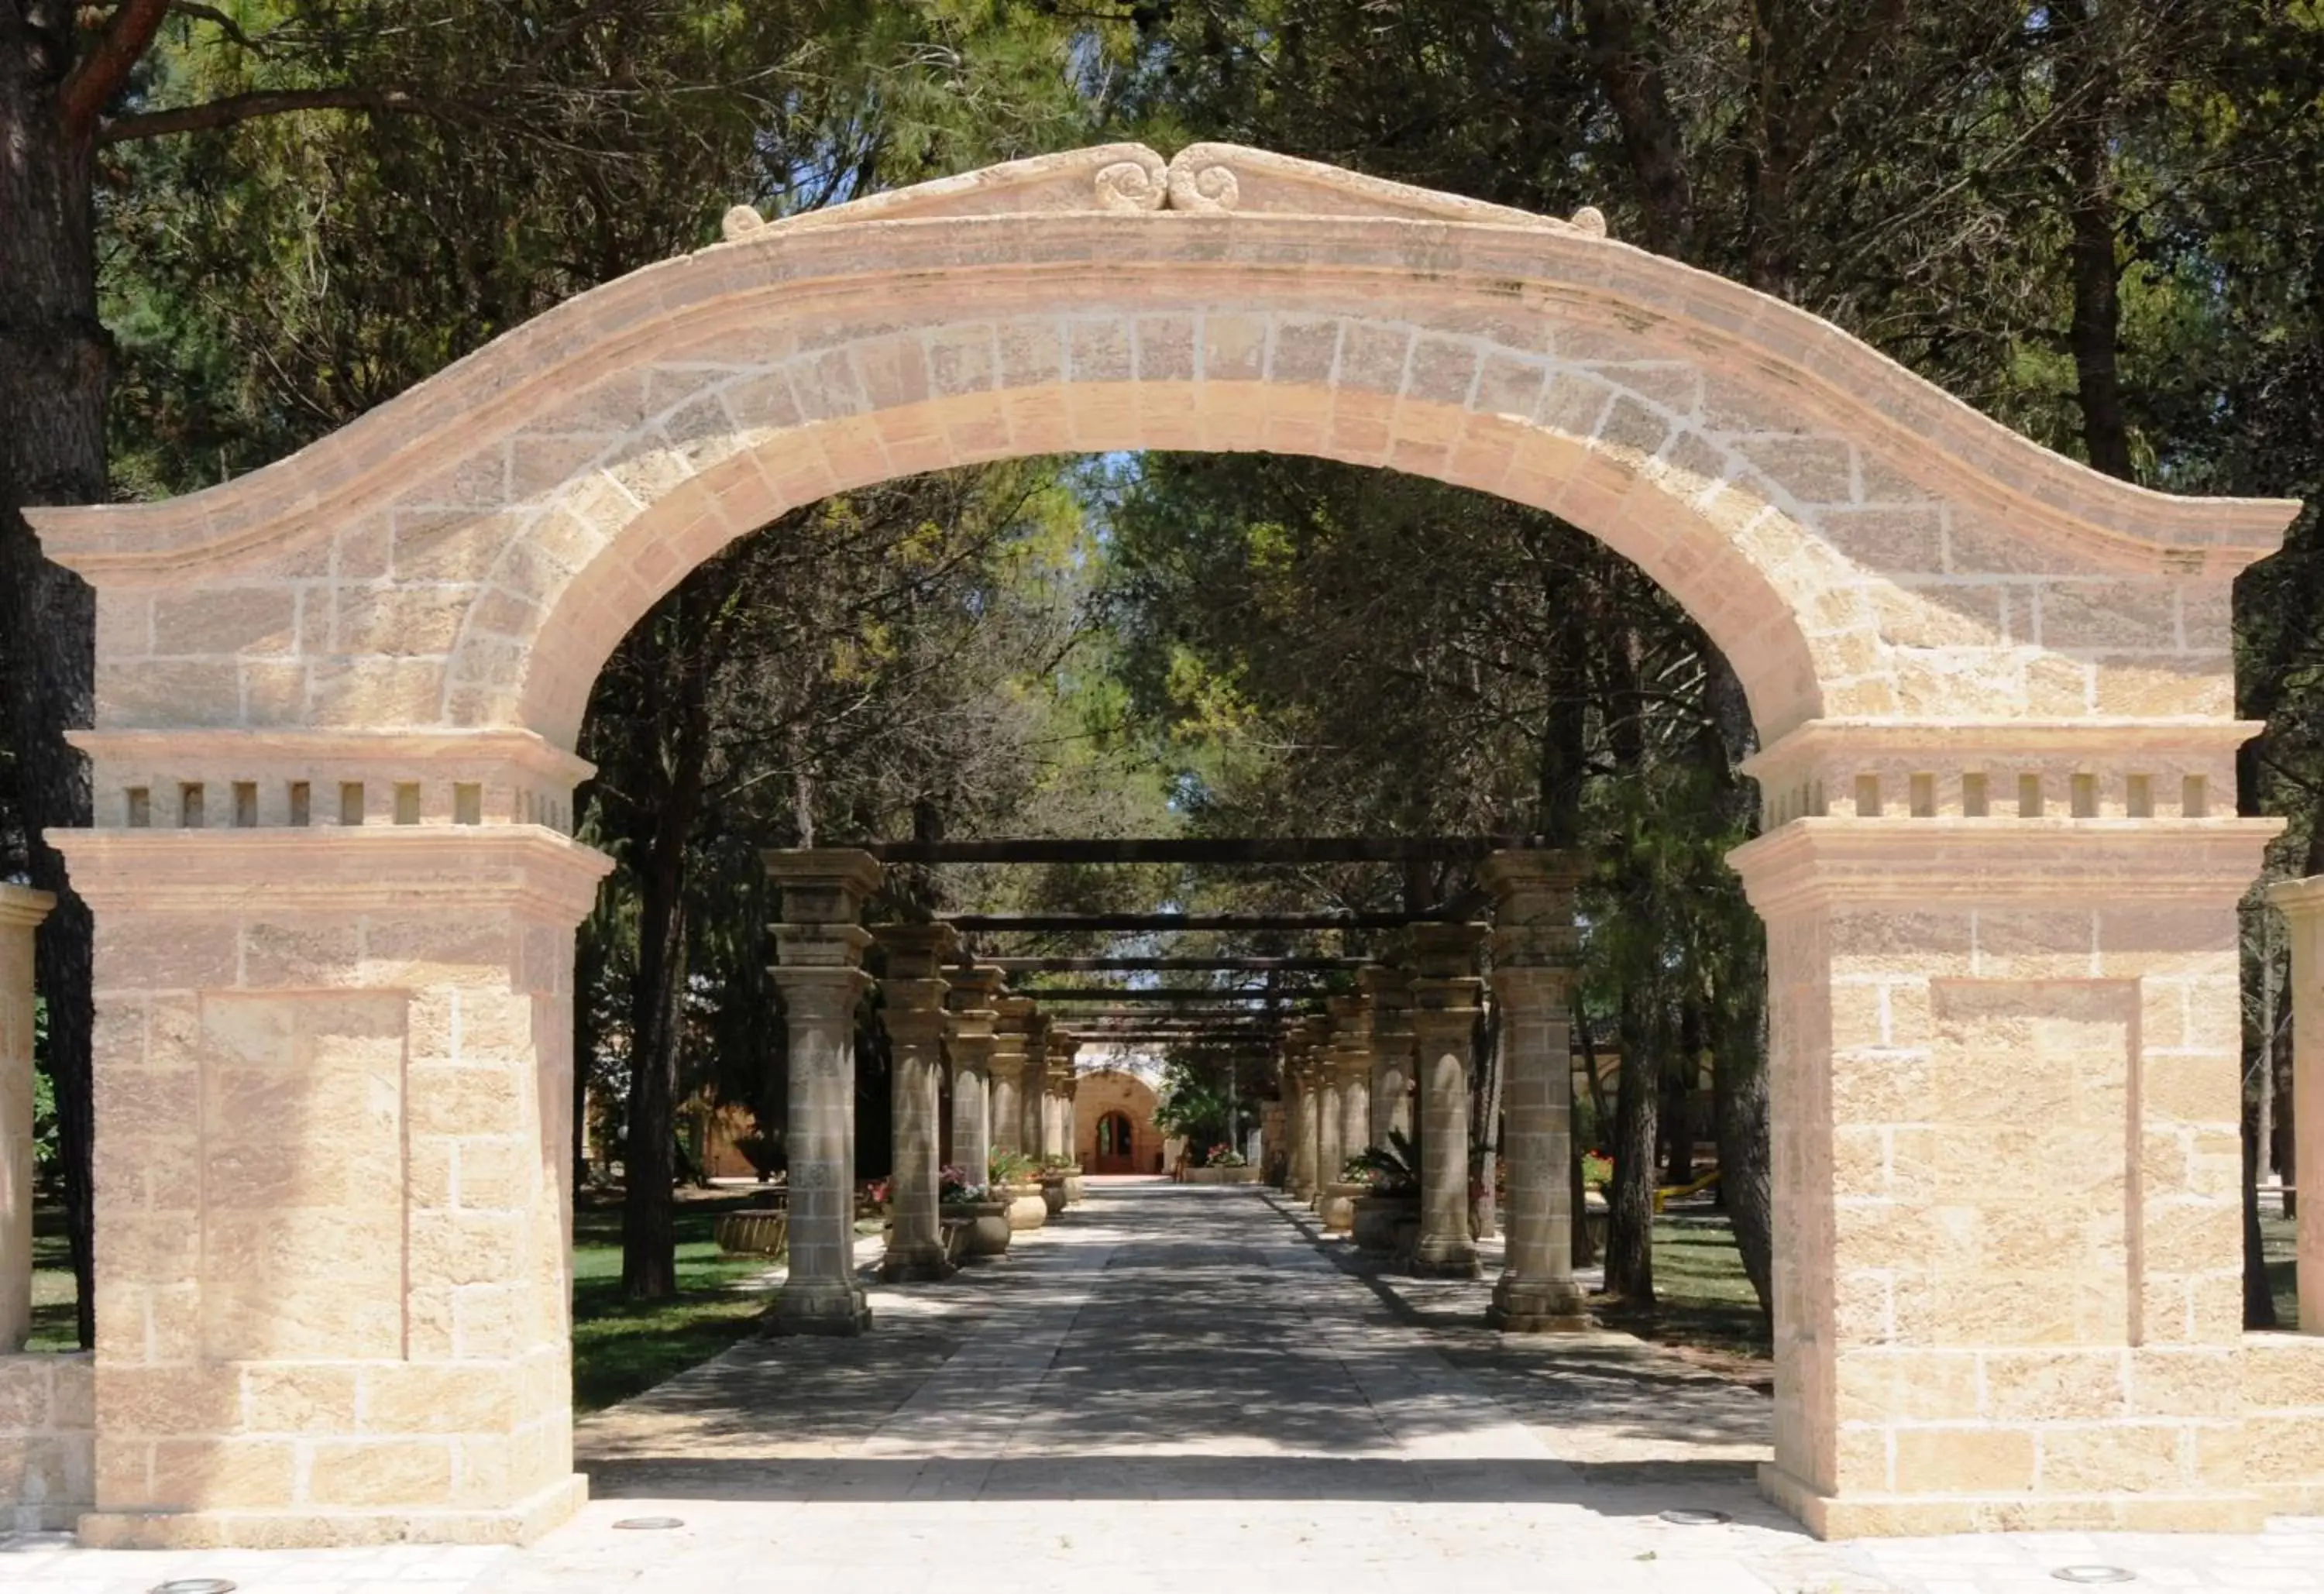 Facade/entrance in Antica Masseria Martuccio